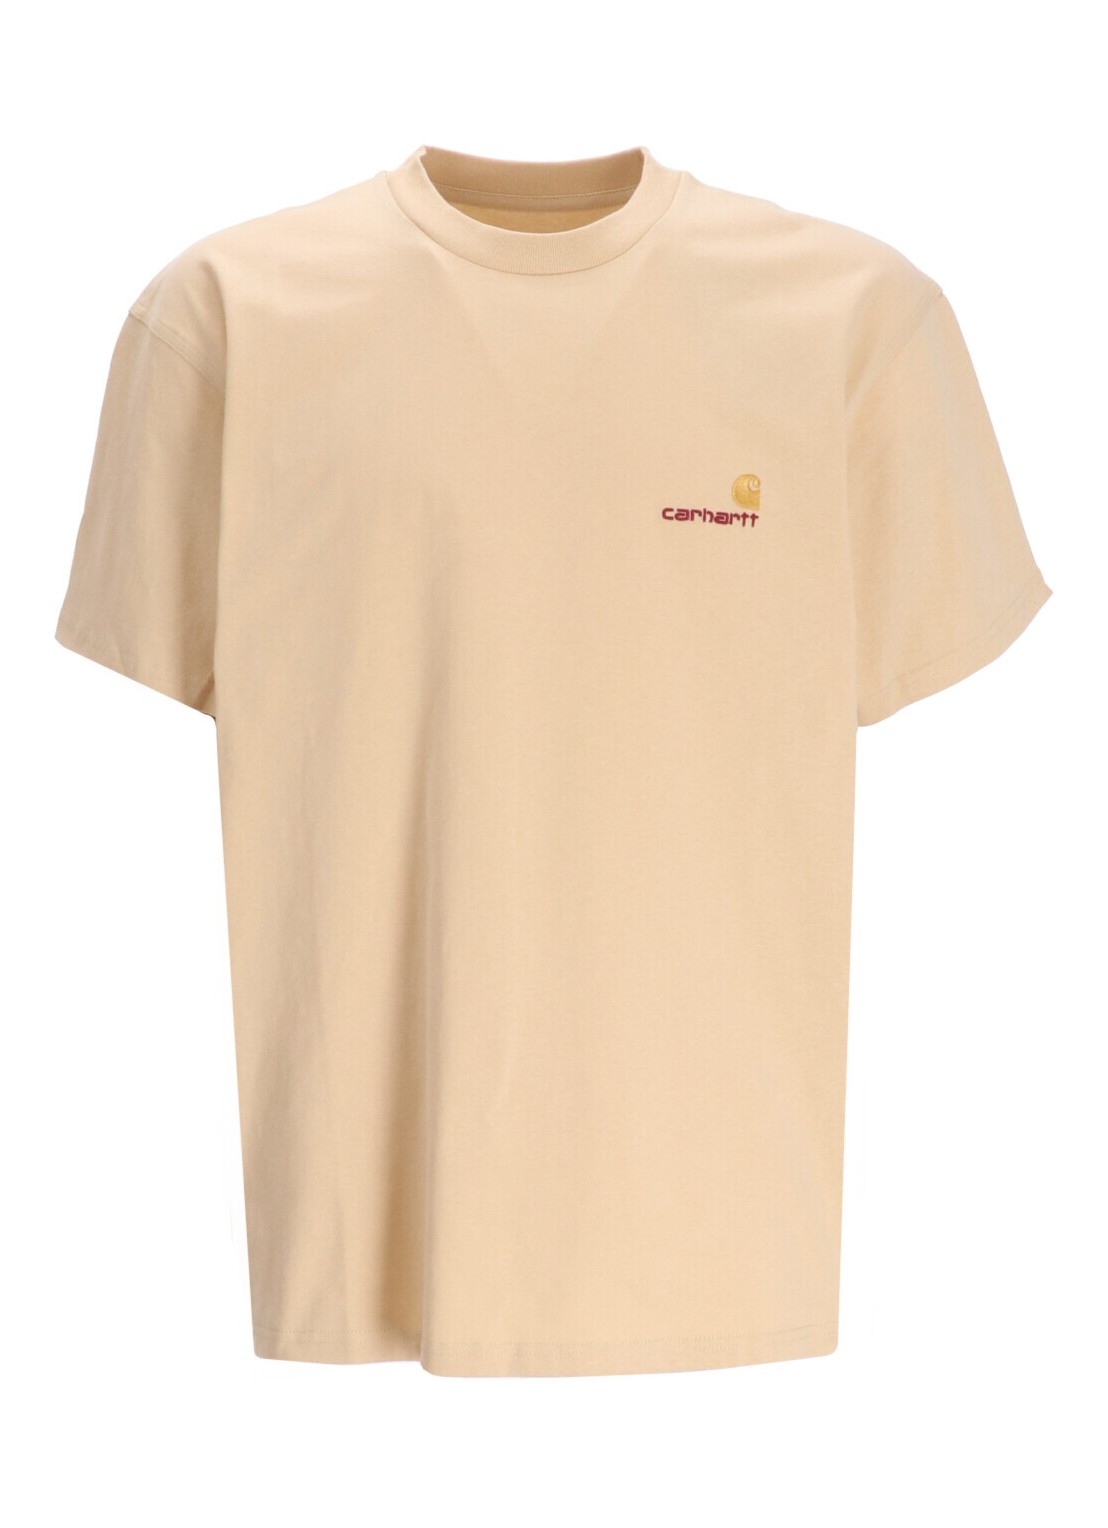 Camiseta carhartt t-shirt man s/s american script t-shir i029956 1yrxx talla XXL
 